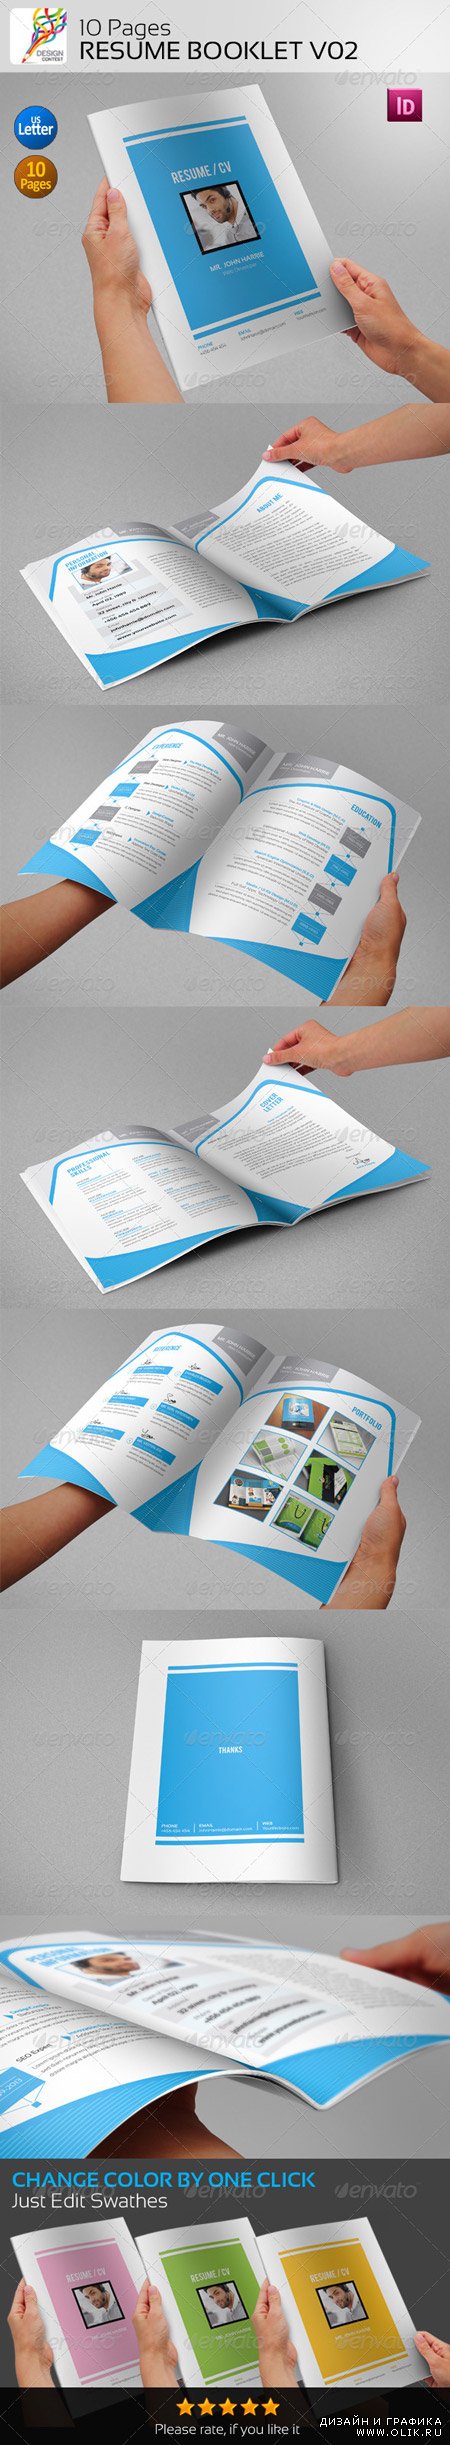 PSD - 10 Pages Resume Booklet V02